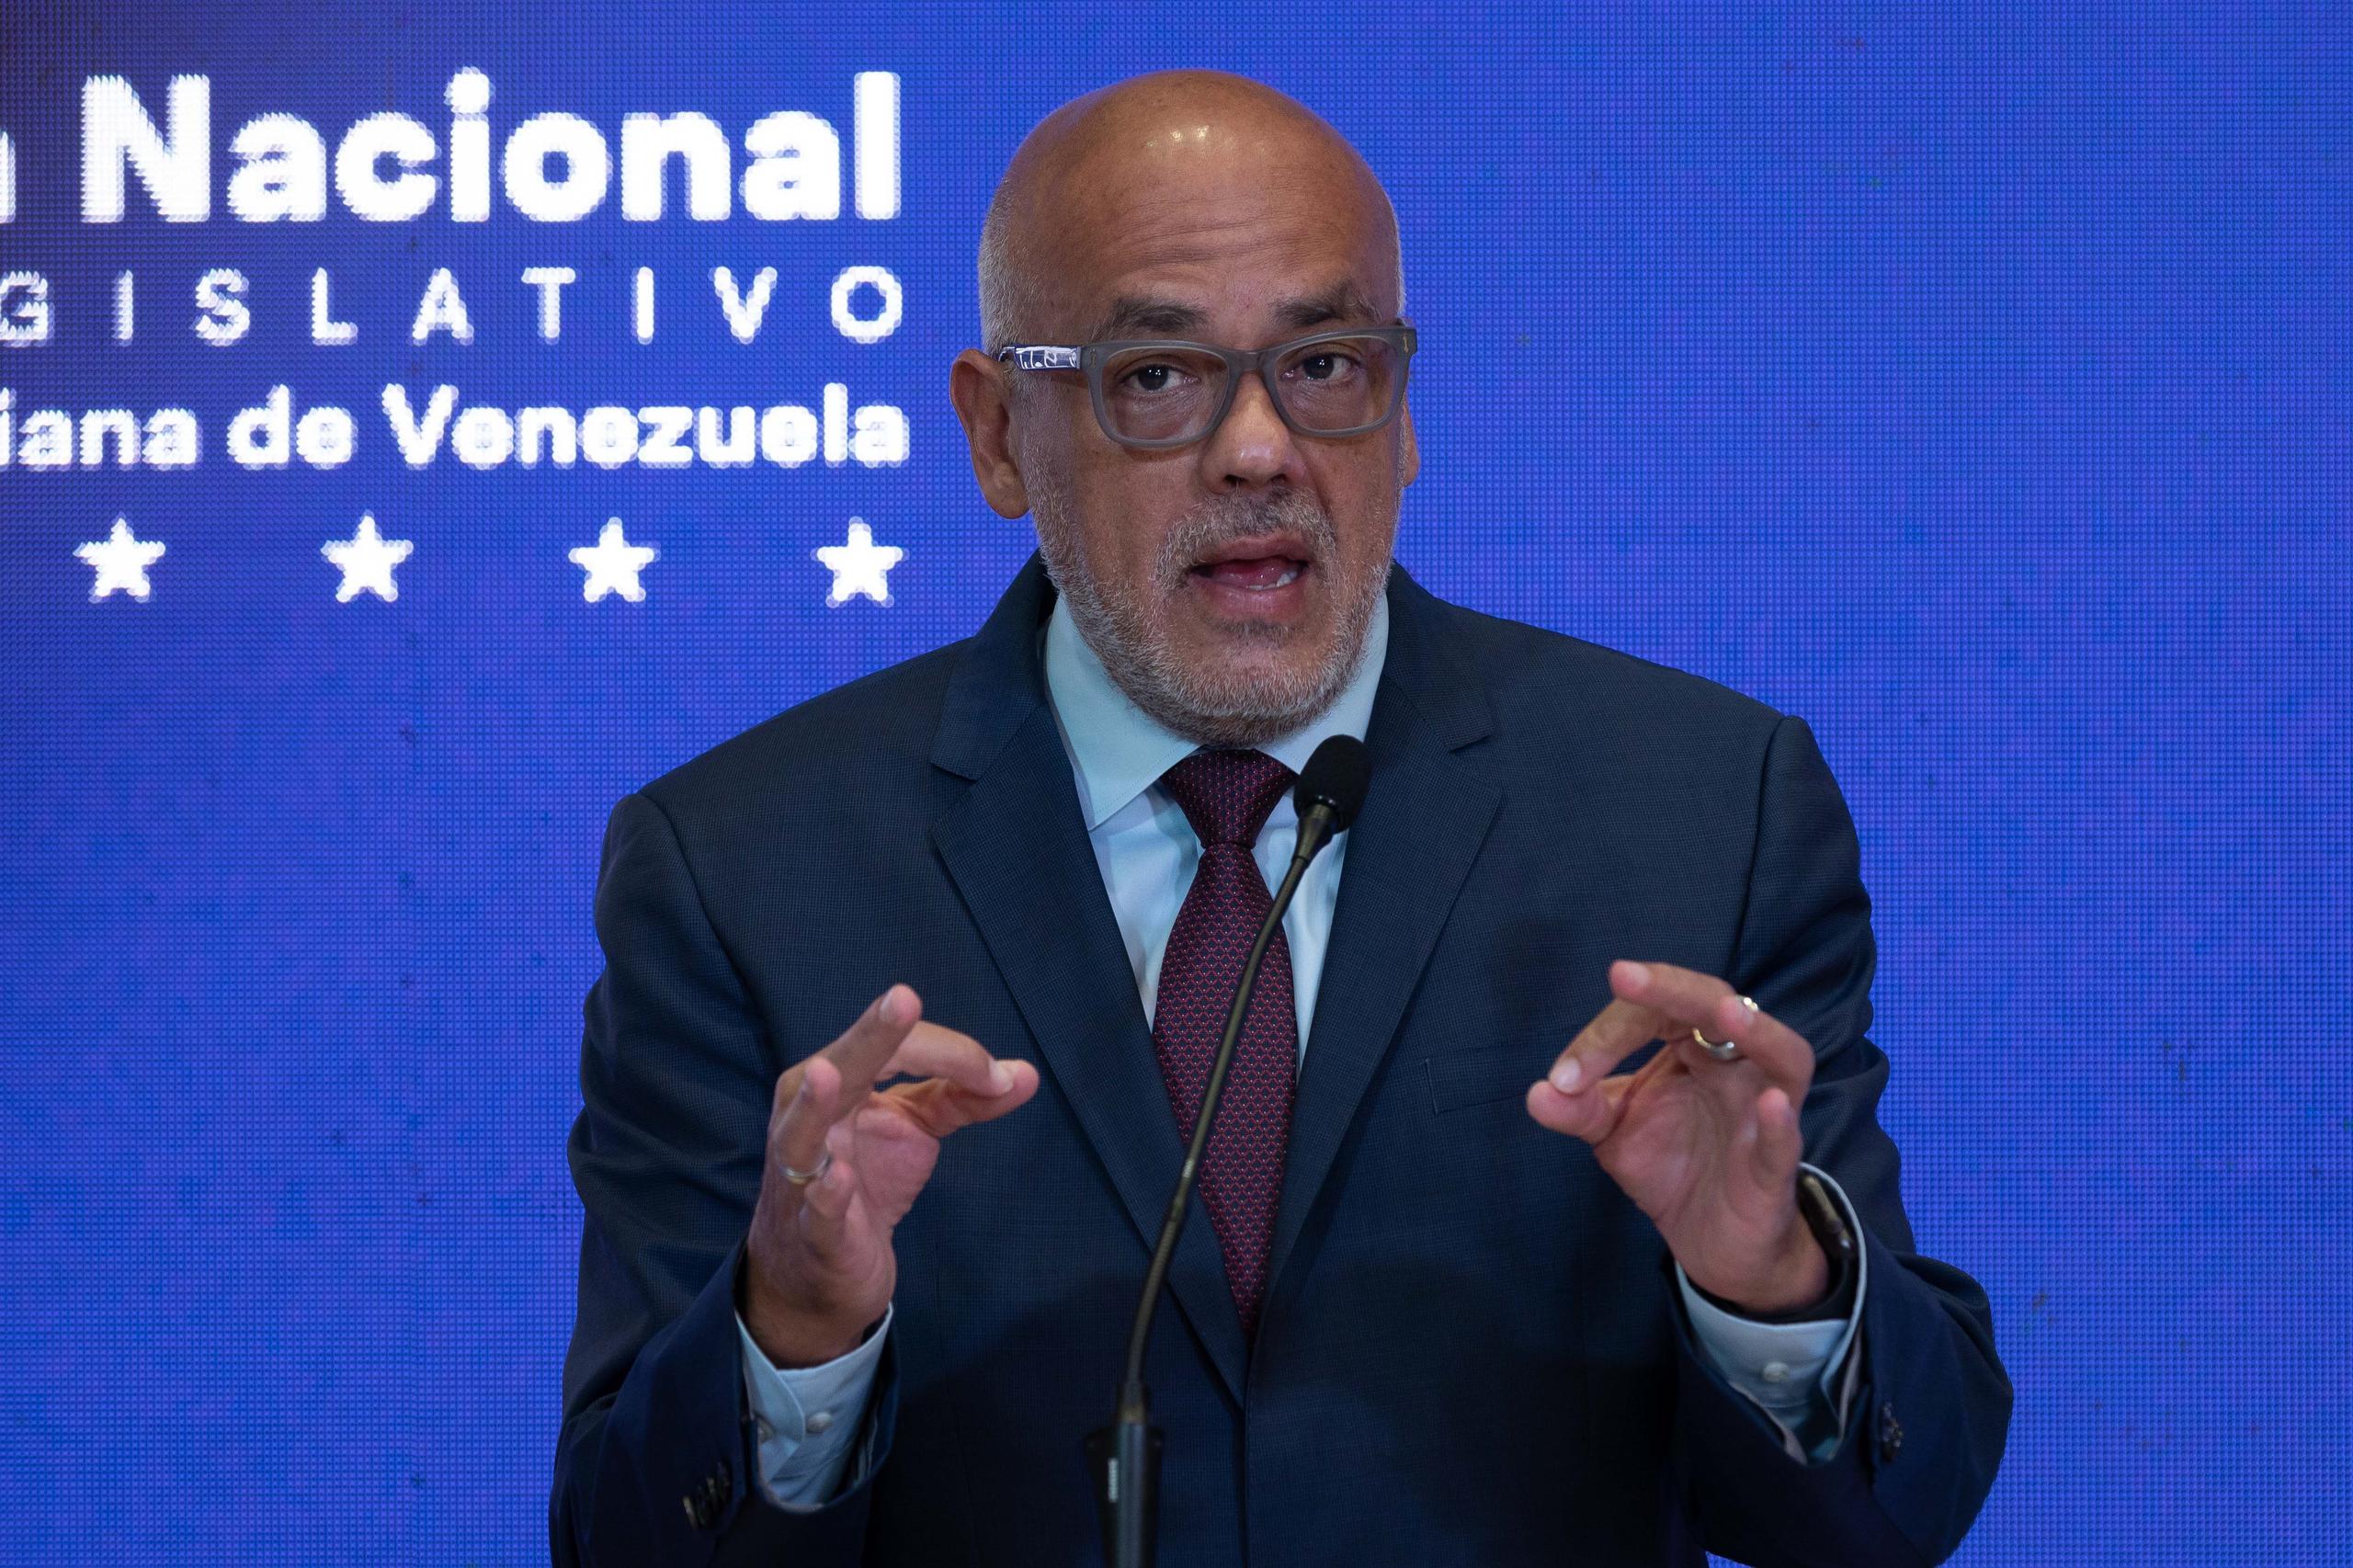 El diálogo entre el gobierno de Venezuela y sectores opositores se convirtió en víctimas tras la extradición de Álex Saab, testaferro del presidente Nicolás Maduro, a los Estados Unidos.